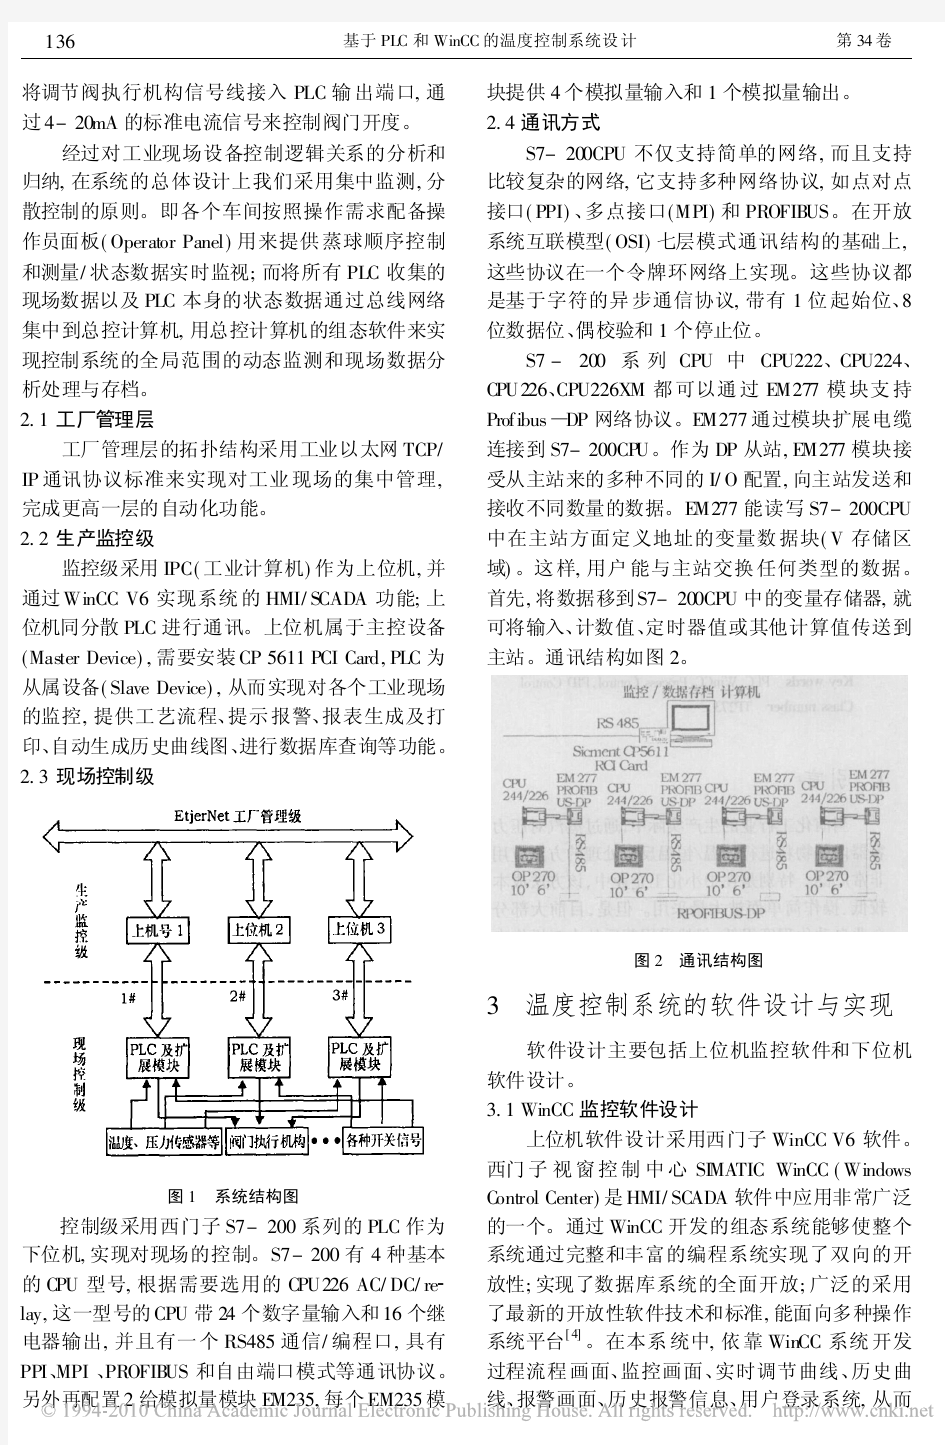 基于PLC和WinCC的温度控制系统设计_杨军